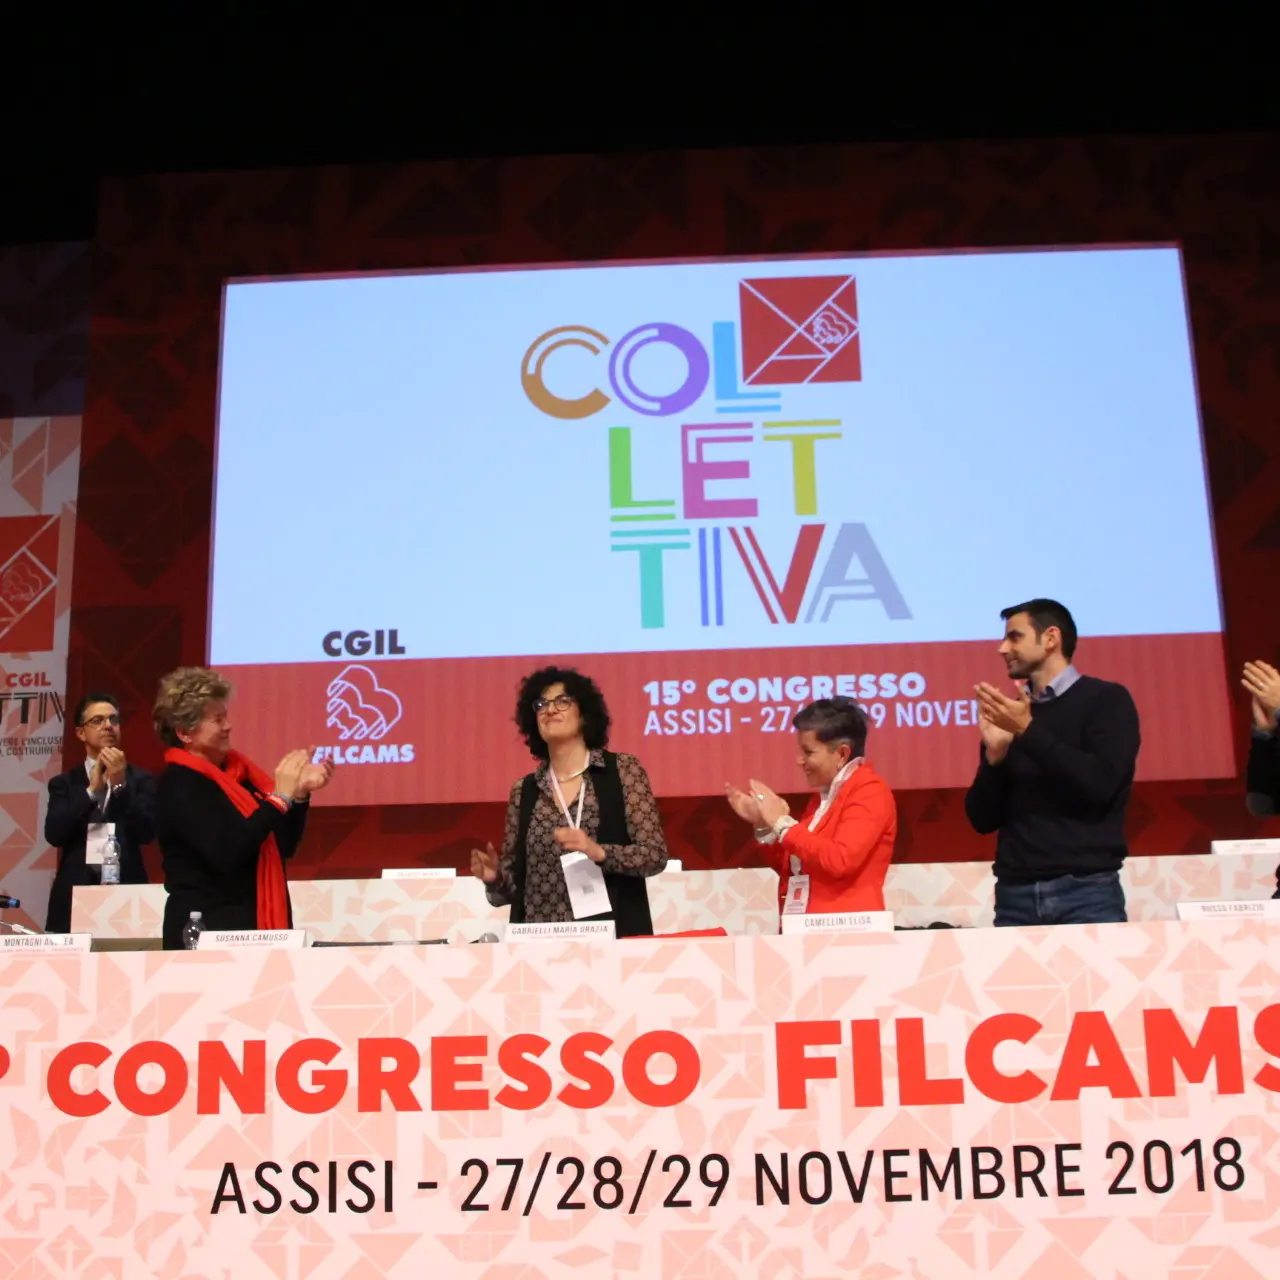 Filcams Cgil, l’assemblea generale conferma Maria Grazia Gabrielli